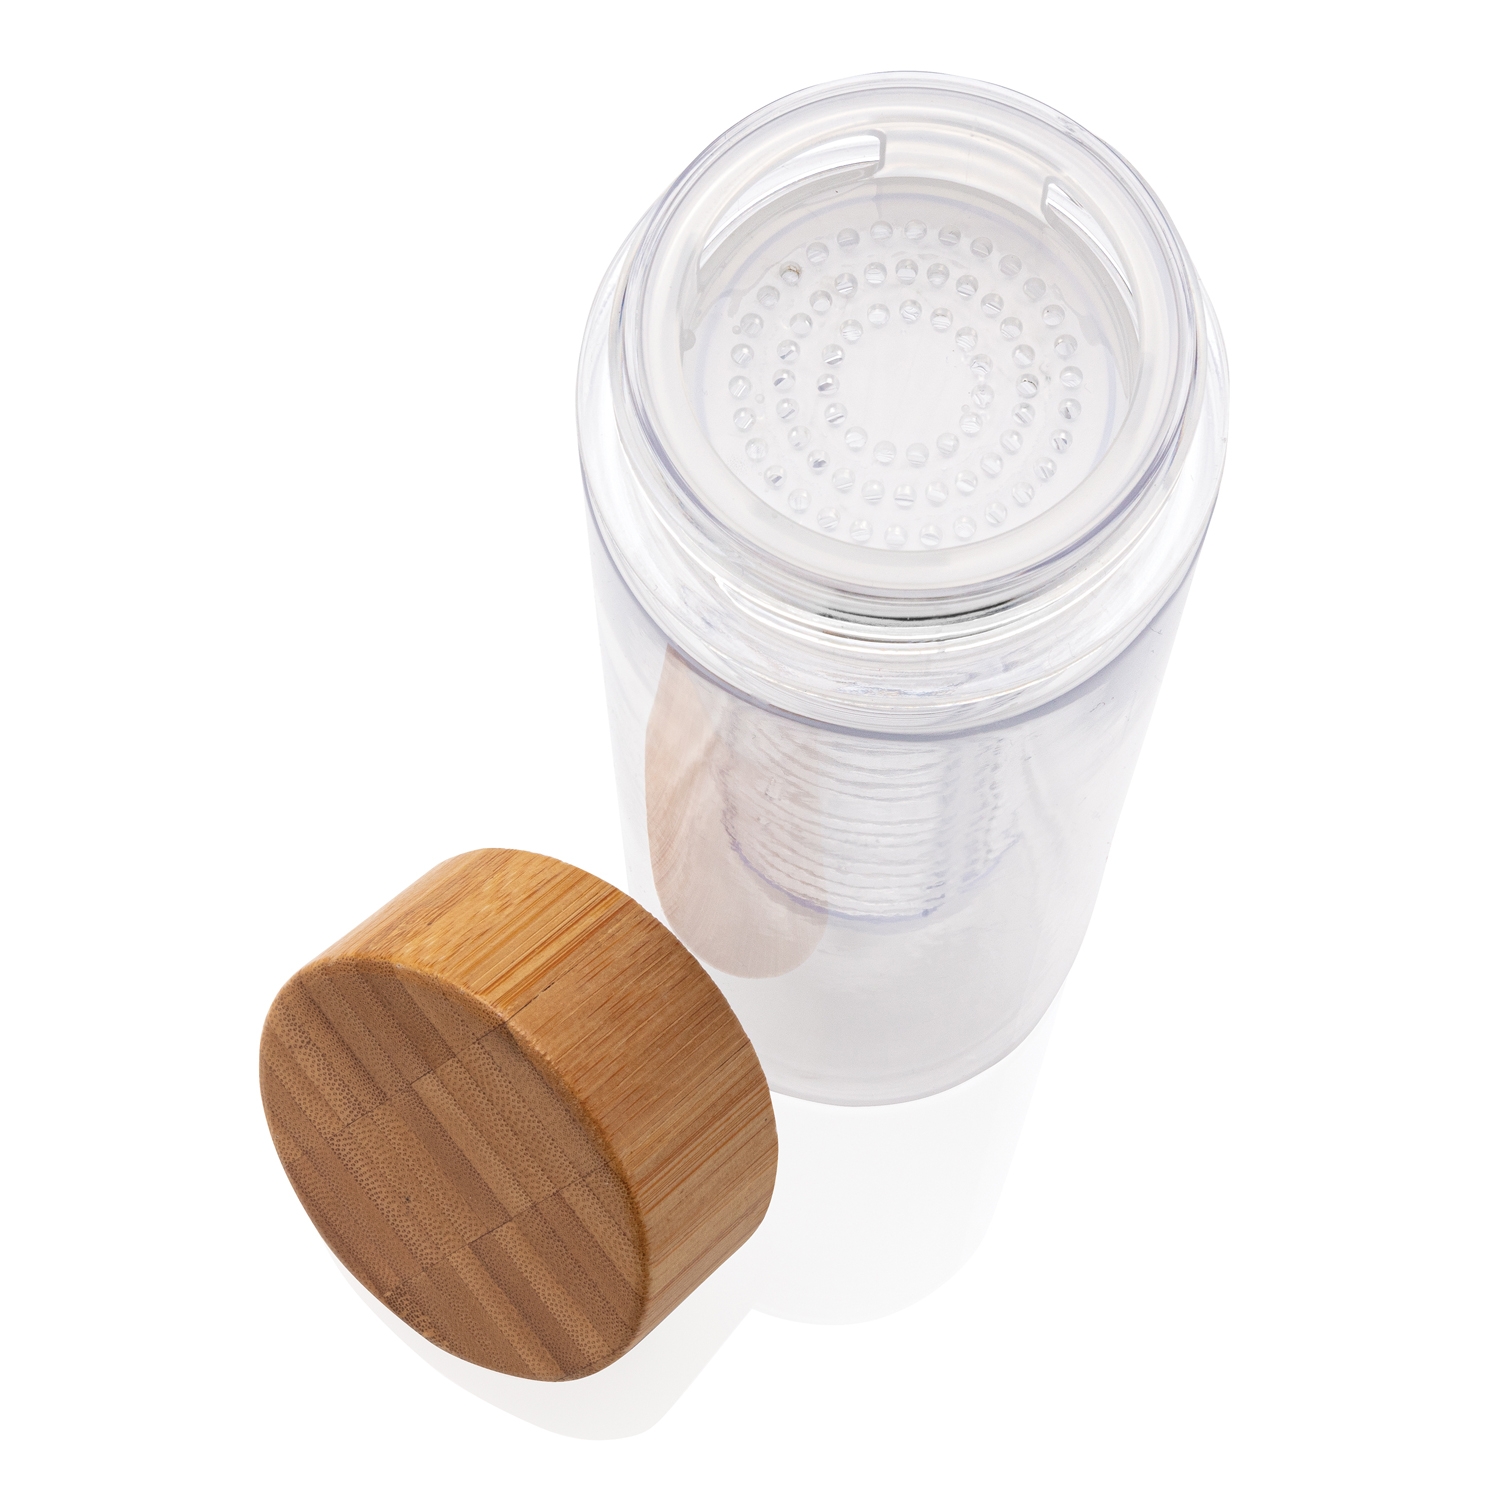 Бутылка-инфьюзер с крышкой из бамбука, прозрачный, tritan; бамбук